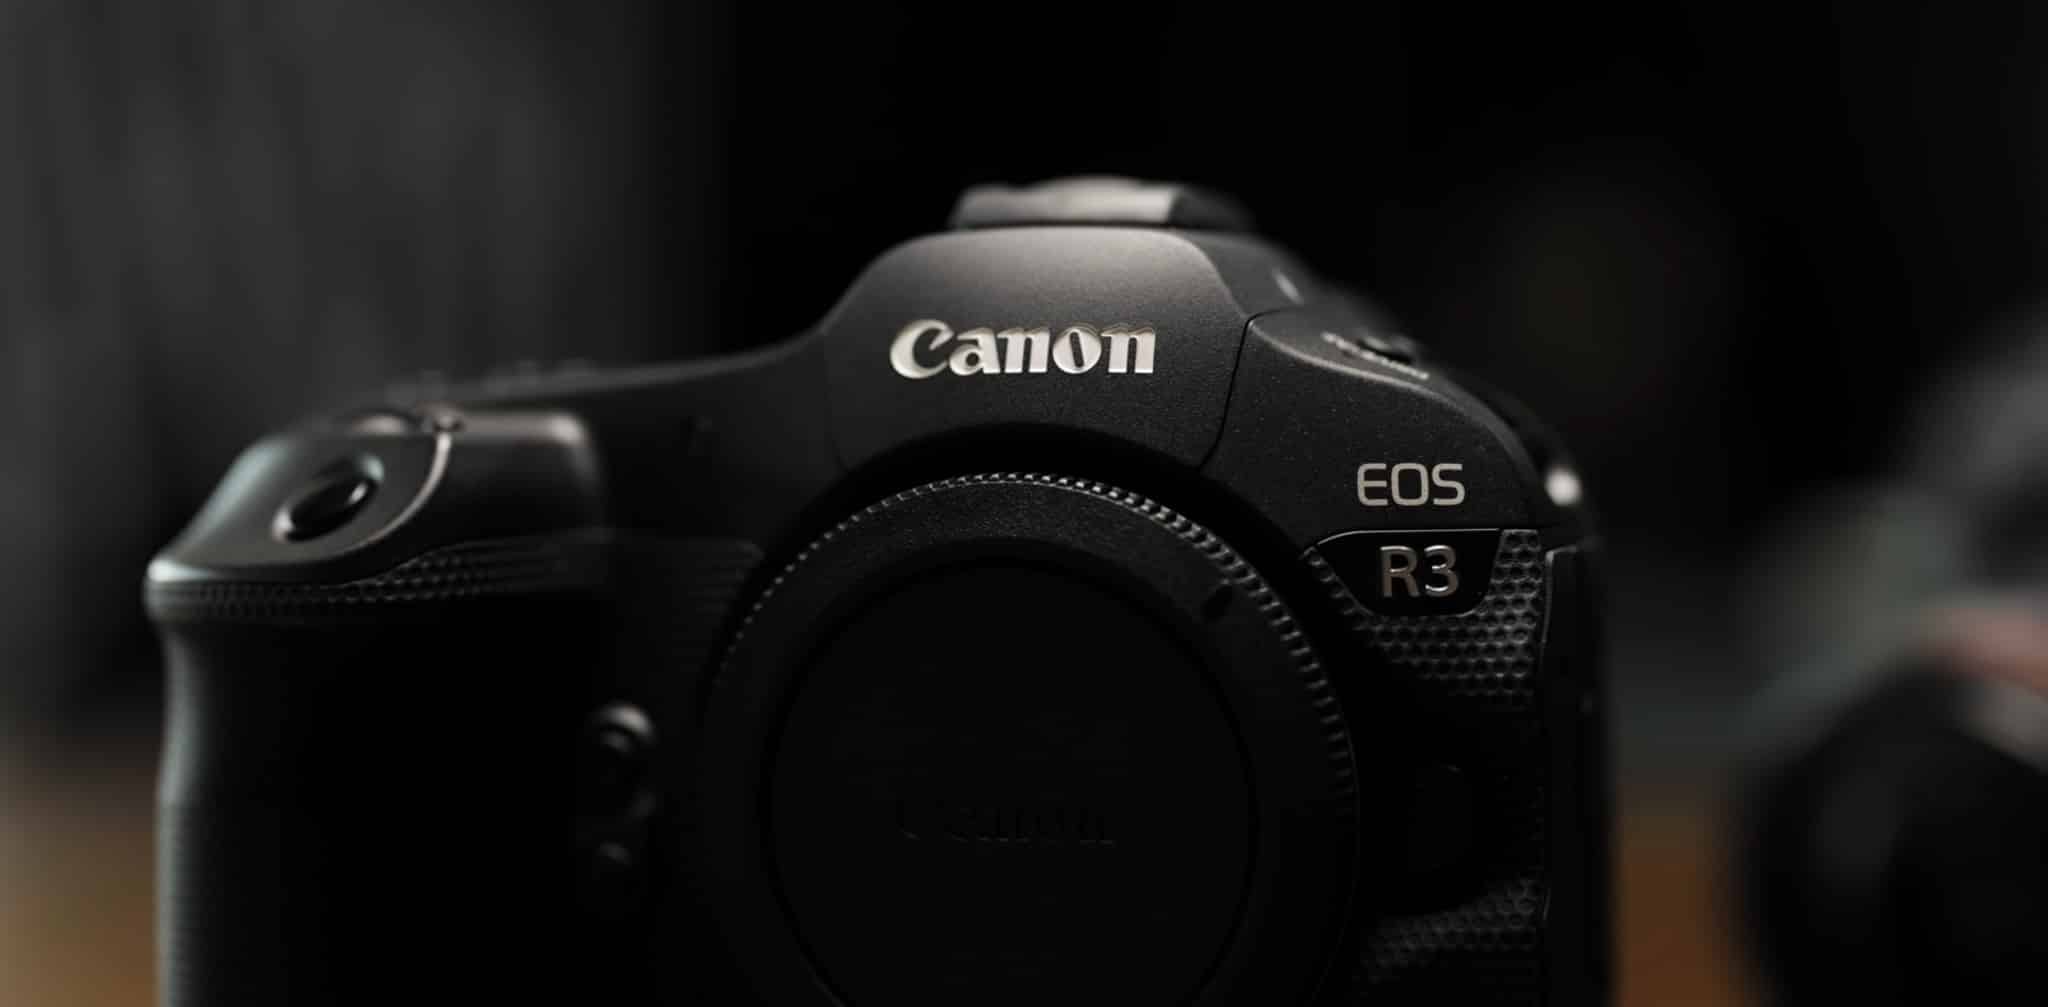 Trên tay máy ảnh Canon EOS R3 từ nhiếp ảnh gia Peter McKinnon: SIÊU NHANH!